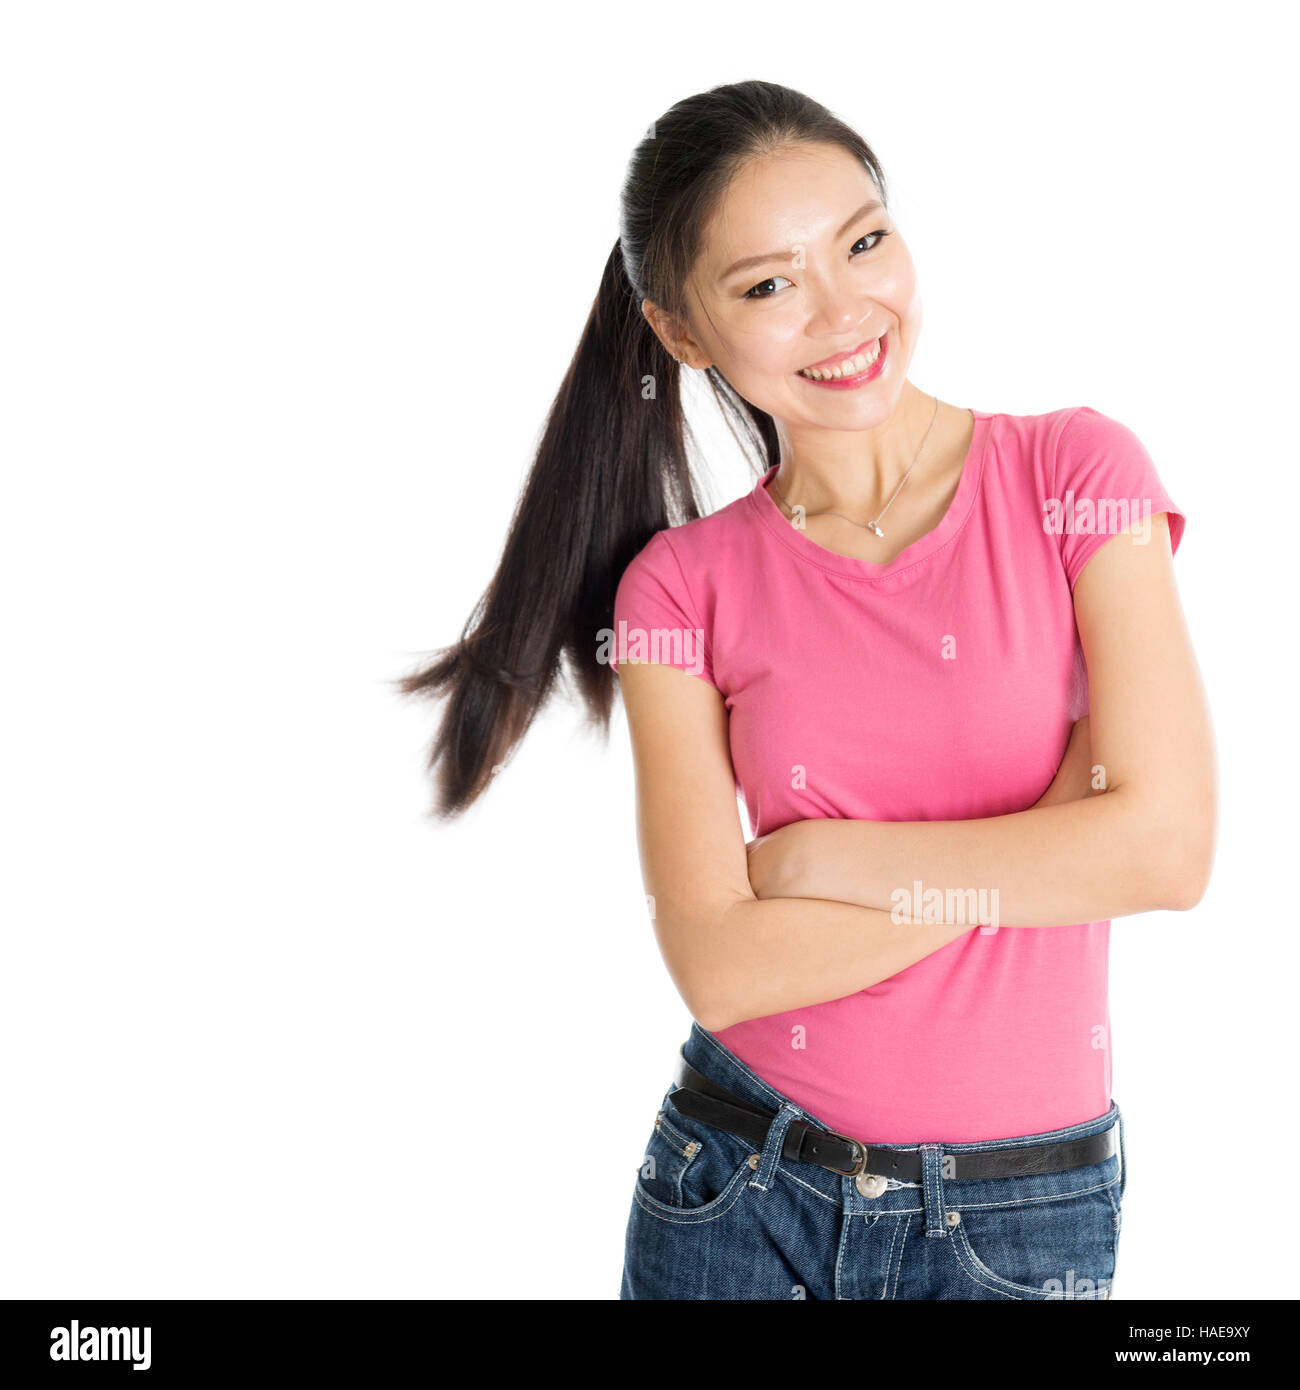 Porträt der glückliche junge asiatische Mädchen in rosa Hemd und Jeans mit Pferdeschwanz Haare, stehen isoliert auf weißem Hintergrund. Stockfoto